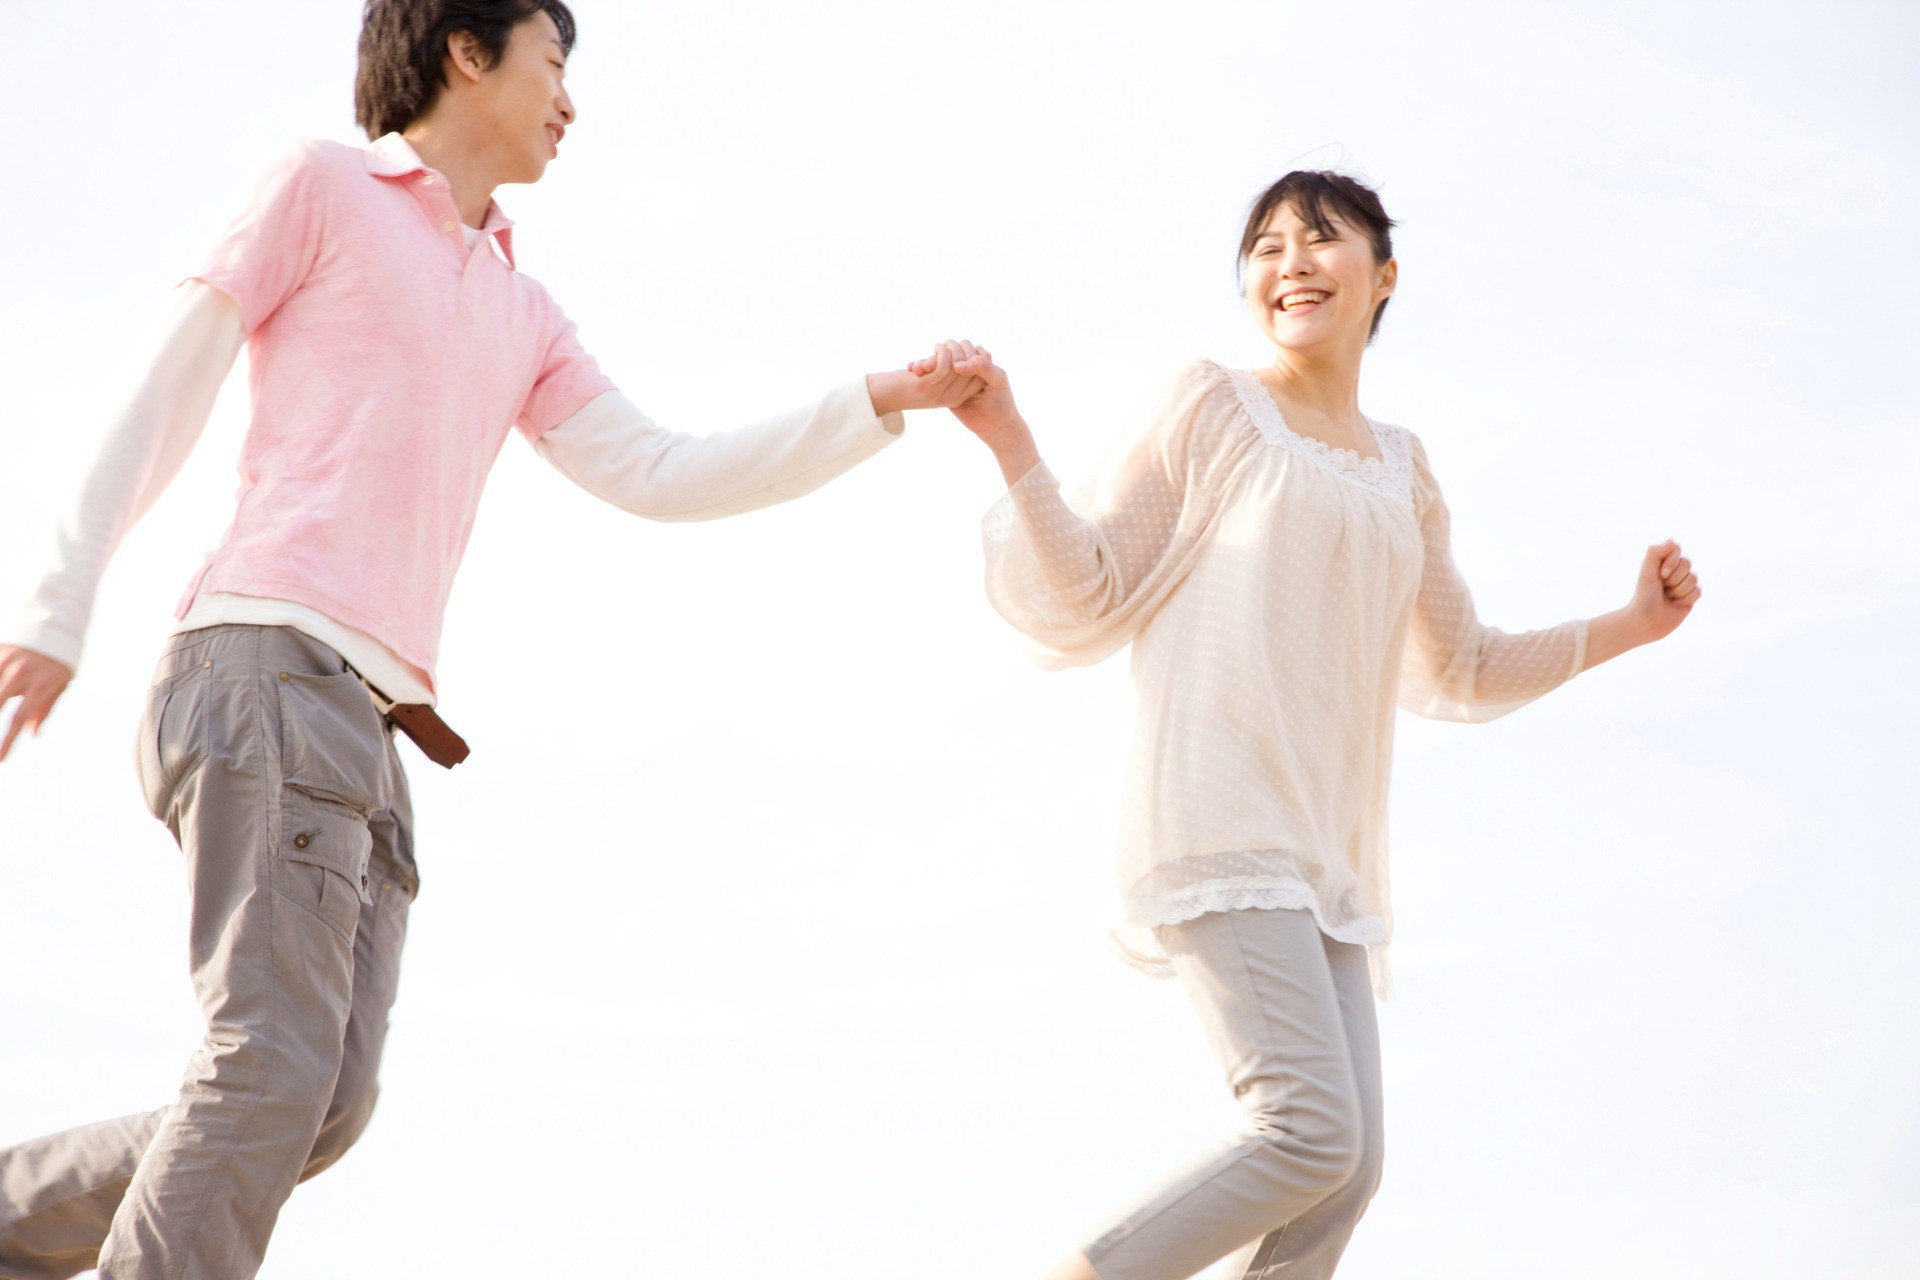 横浜と町田にあるA-smile結婚相談所なら徹底したフォロー体制を整えております